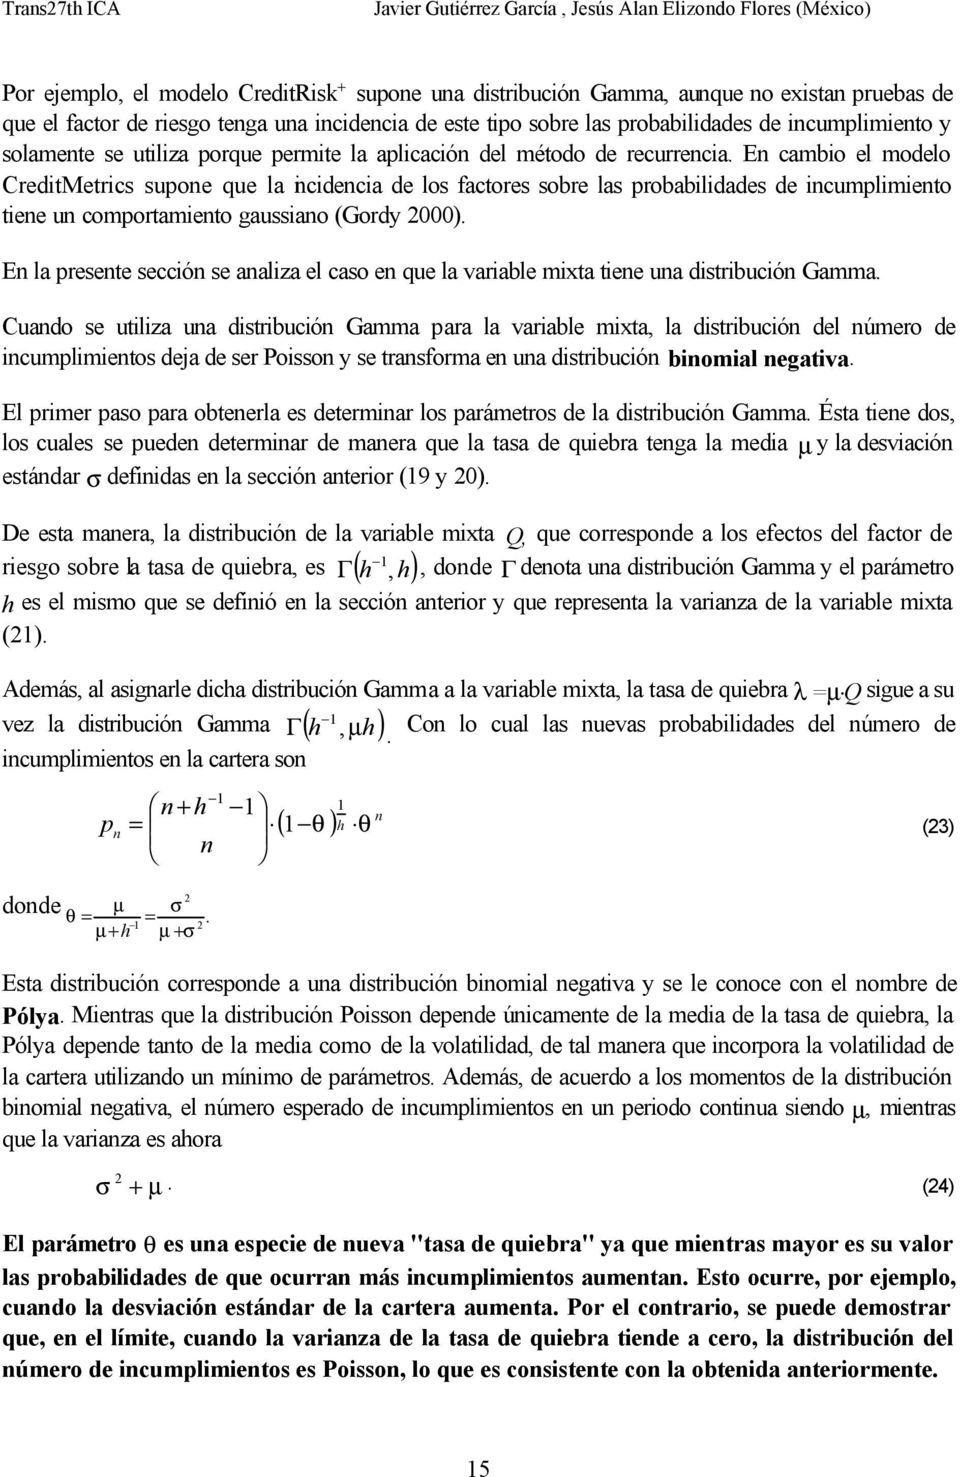 E cambio el modelo CreditMetrics supoe que la icidecia de los factores sobre las probabilidades de icumplimieto tiee u comportamieto gaussiao (Gordy 000).